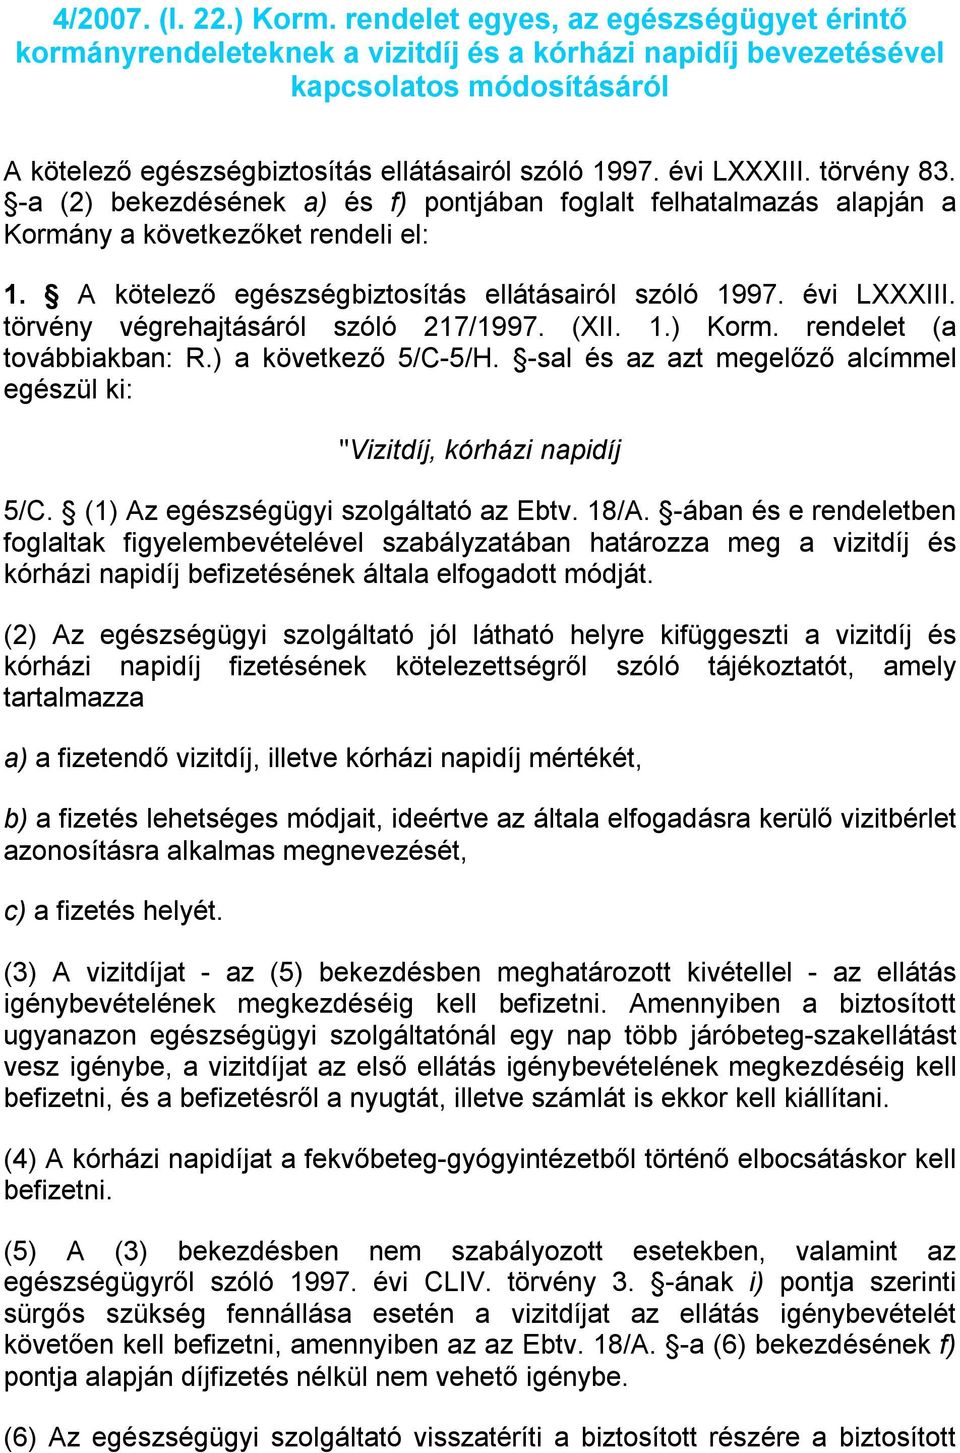 törvény 83. -a (2) bekezdésének a) és f) pontjában foglalt felhatalmazás alapján a Kormány a következőket rendeli el: 1. A kötelező egészségbiztosítás ellátásairól szóló 1997. évi LXXXIII.